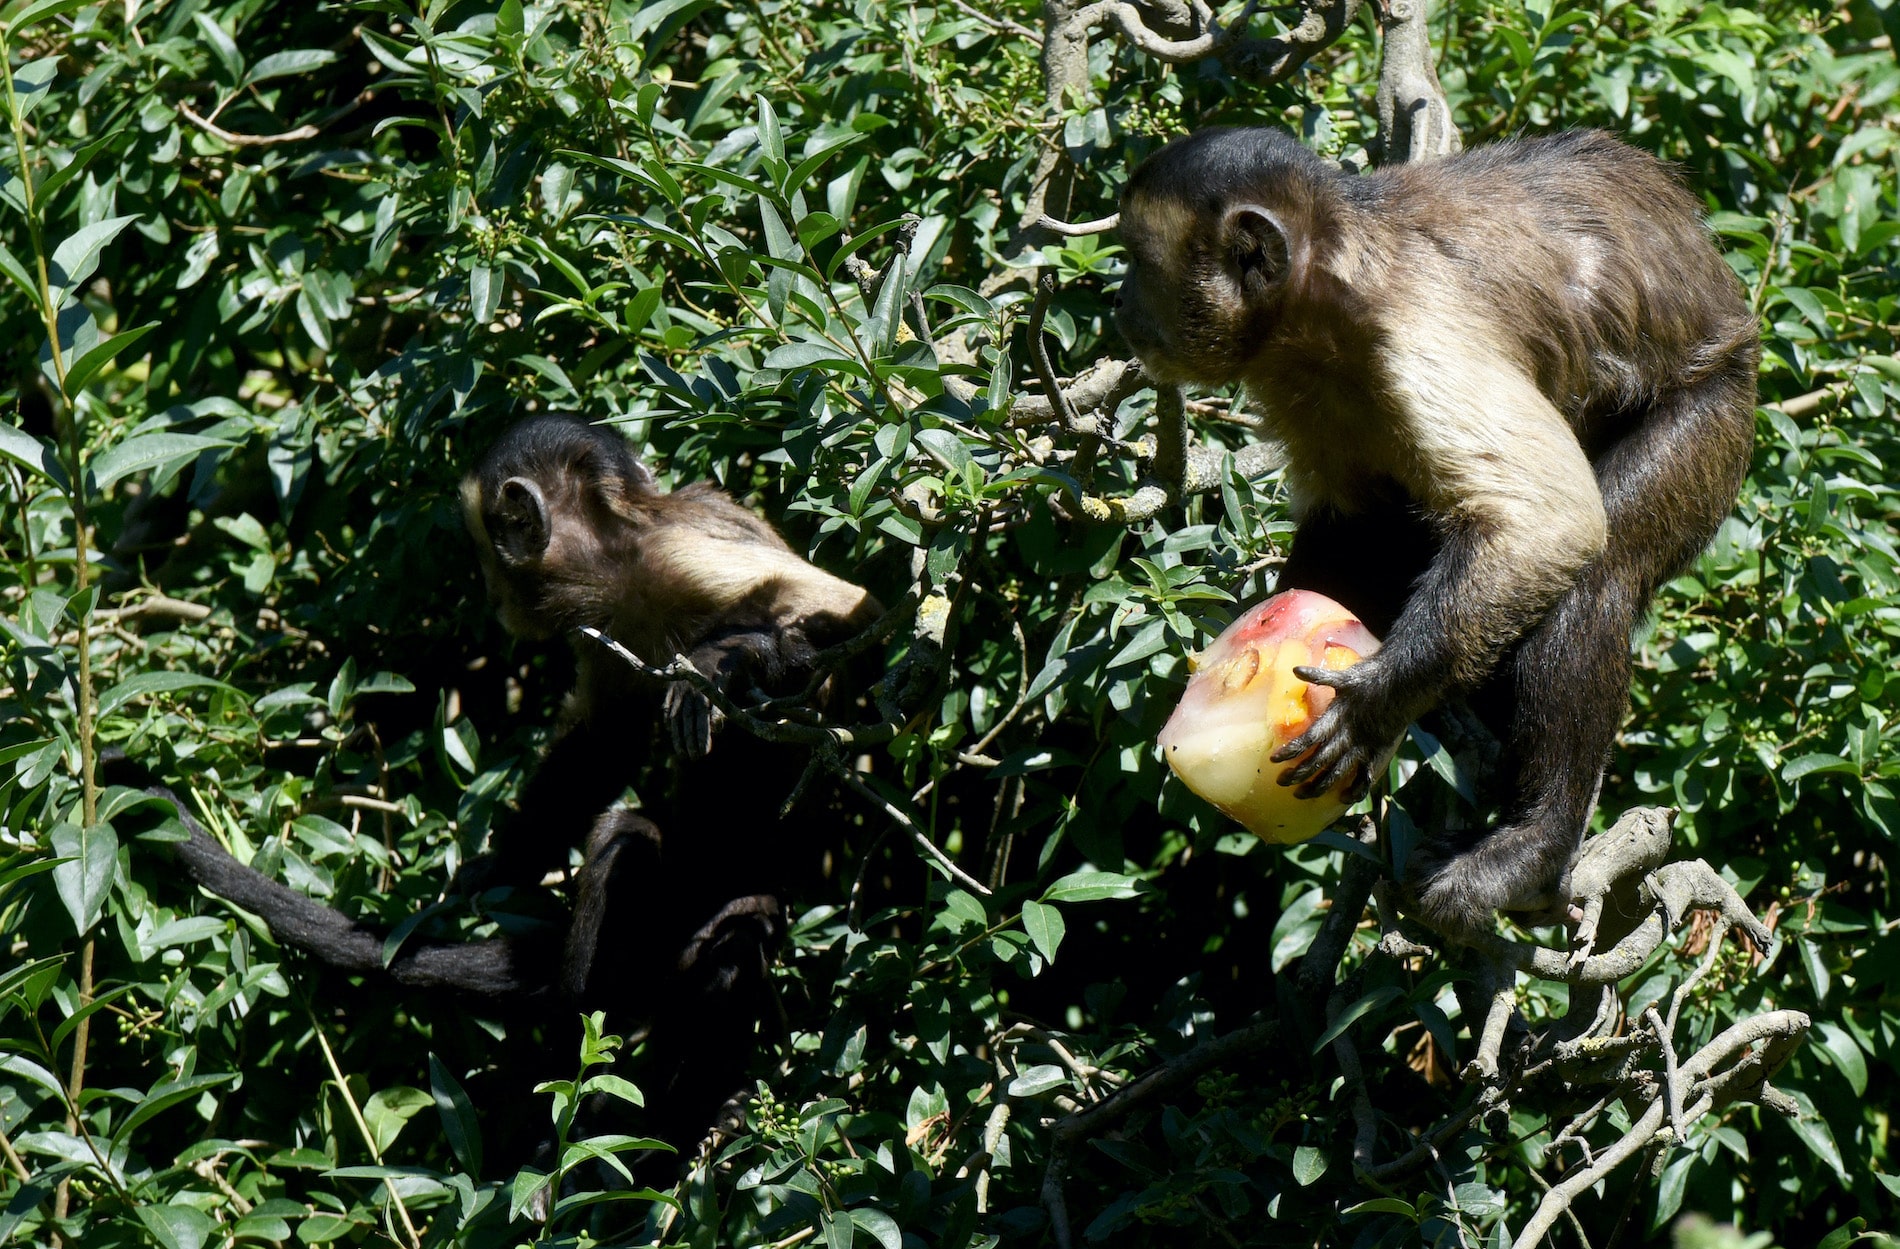 Controvertido estudio de Harvard con monos reaviva el debate sobre las pruebas con animales